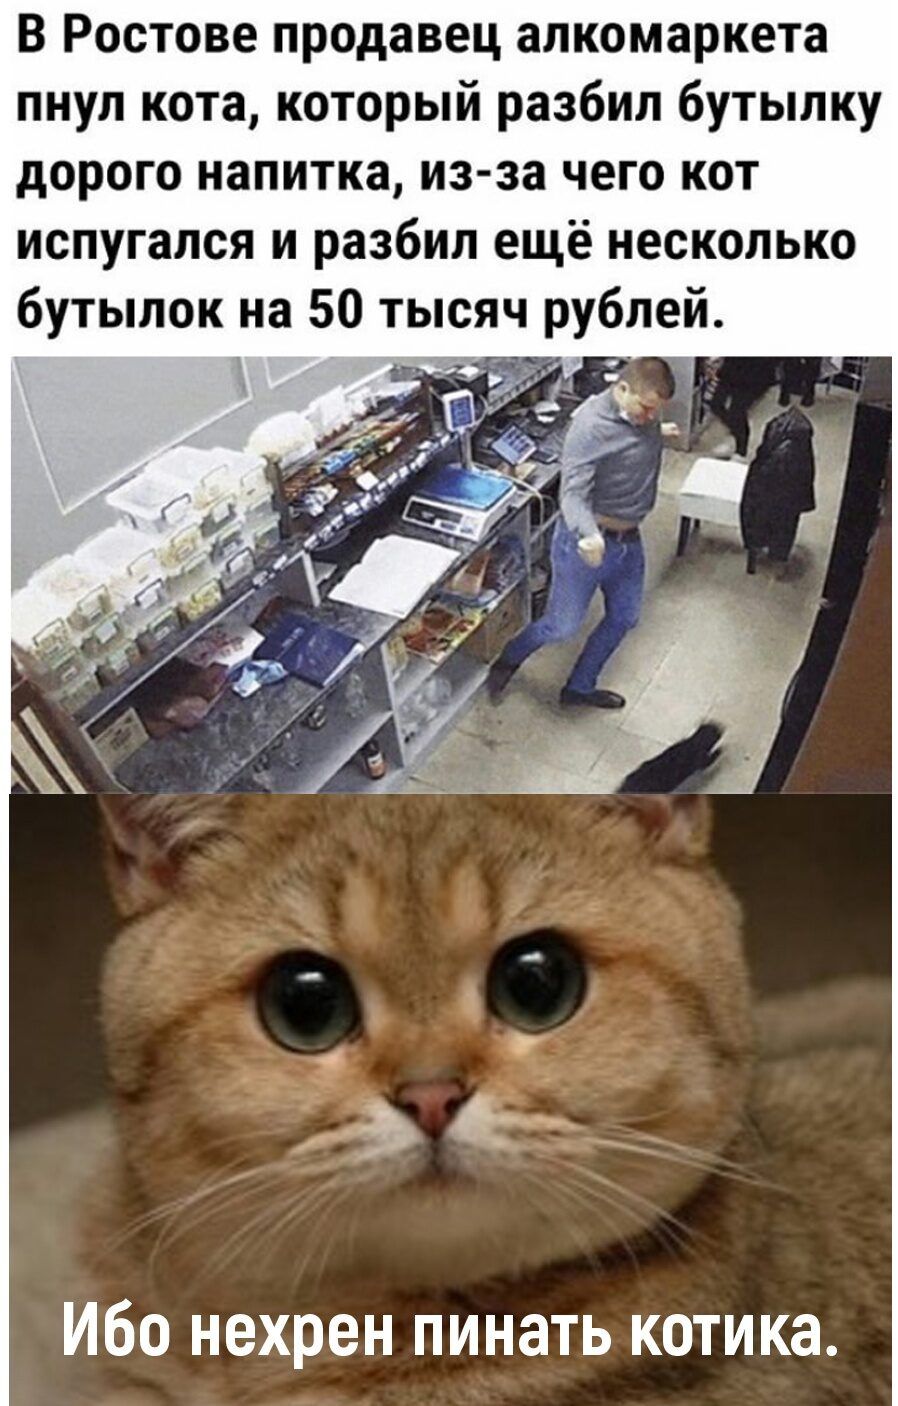 В Ростове продавец апкомаркета пнул кота который разбил бутылку дорого напитка из за чего кот испугался и разбил ещё несколько бутылок на 50 тысяч рублей Ибо нехрен пинать котика